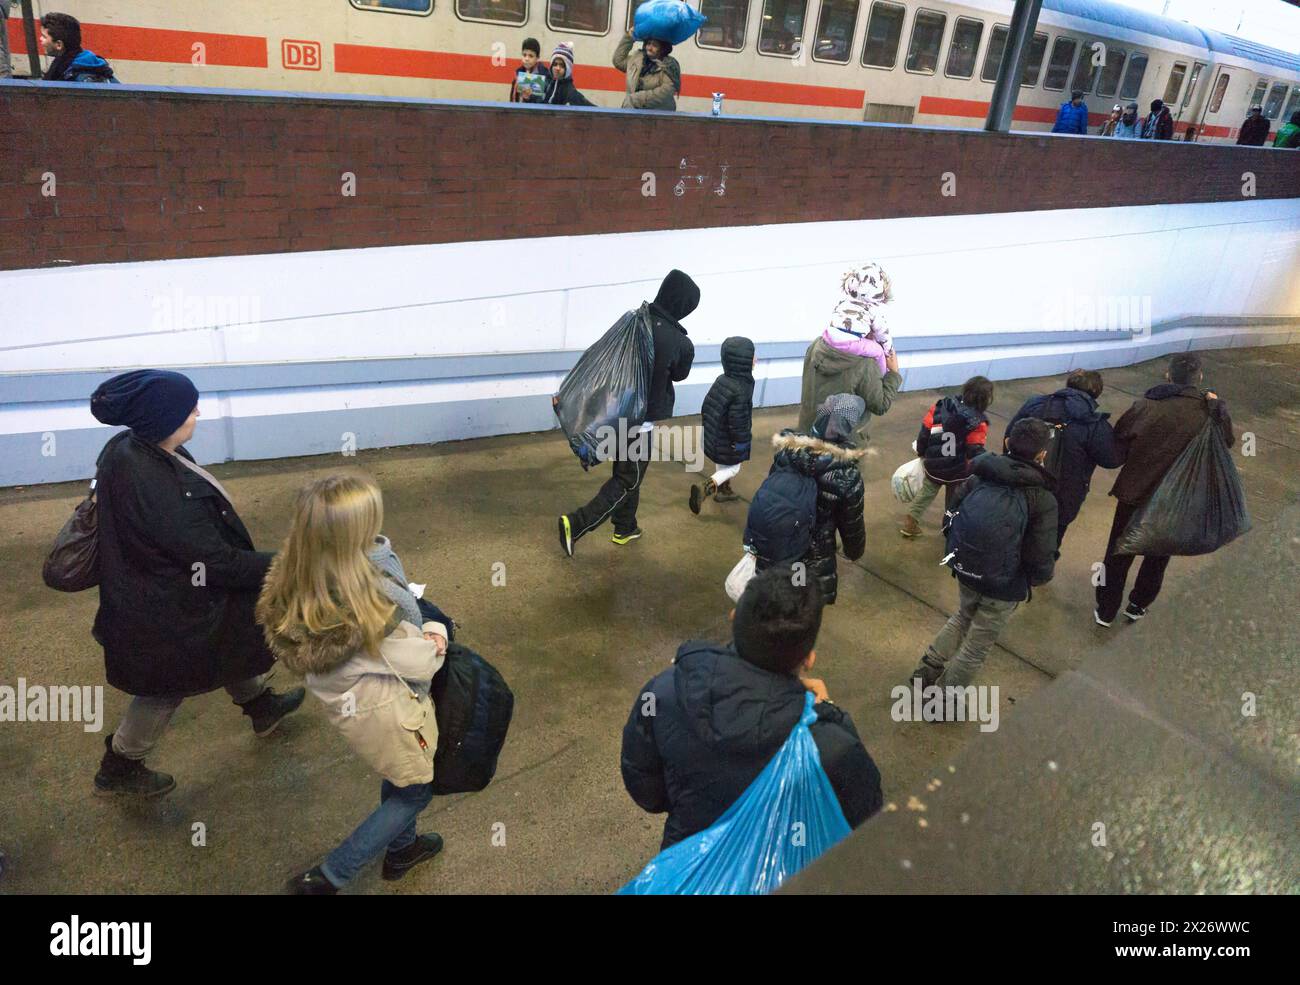 Flüchtlinge sind mit einem IC-Zug am Bahnhof Schönefeld angekommen. Sie werden dann mit dem Bus zur Unterkunft in Berlin, 02.12.2015, Schönefeld, gebracht Stockfoto